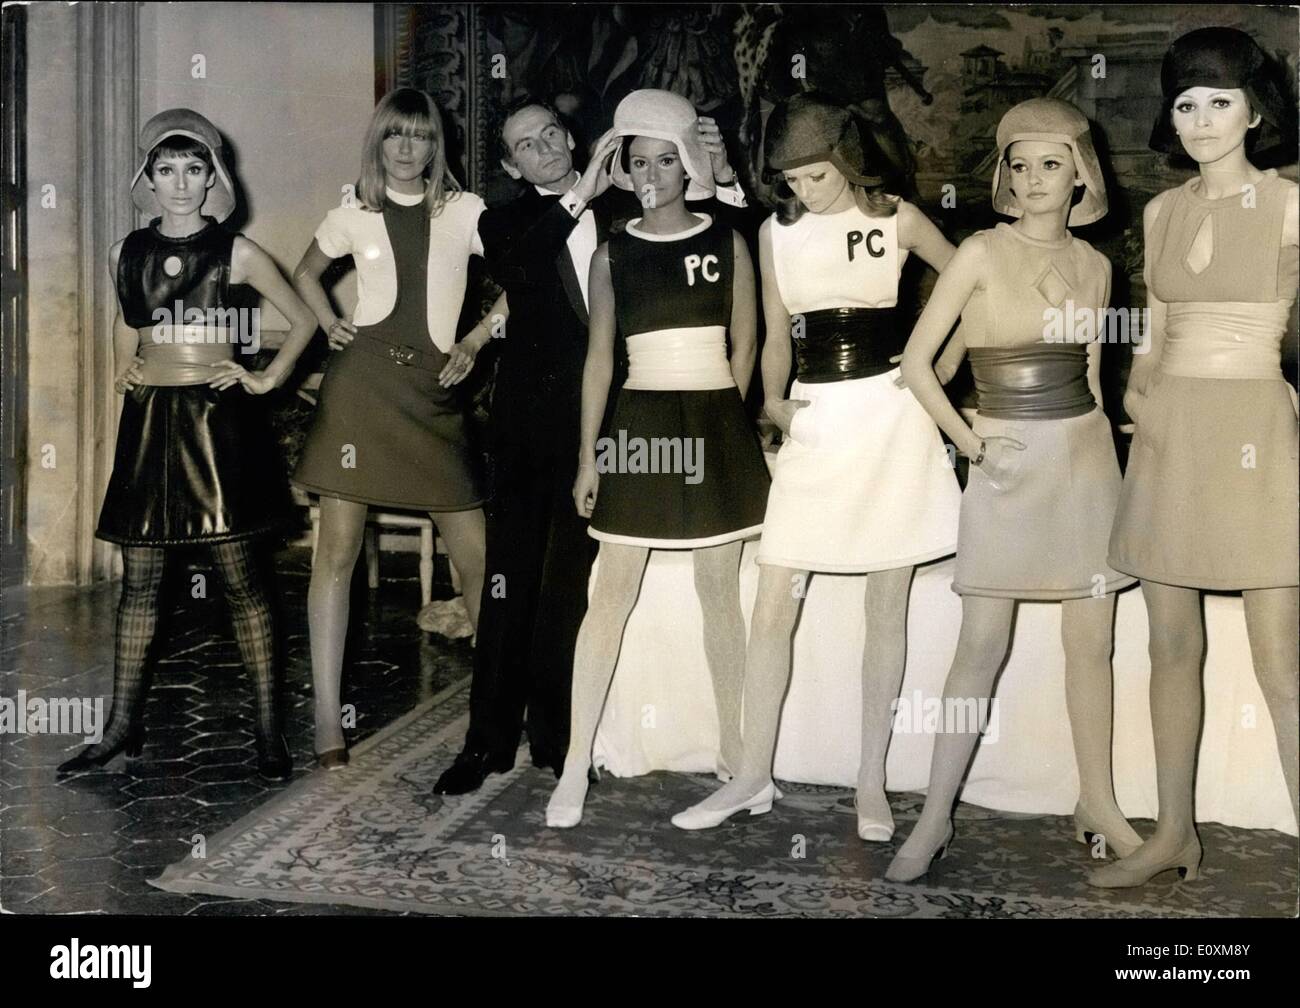 Avril 04, 1967 - Pierre Cardin à Rome : Fashion show à l'Ambassade de  France. Pierre Cardin le célèbre couturier français a présenté sa  collection ''Spring 67'' au Palais Farnese, siège de